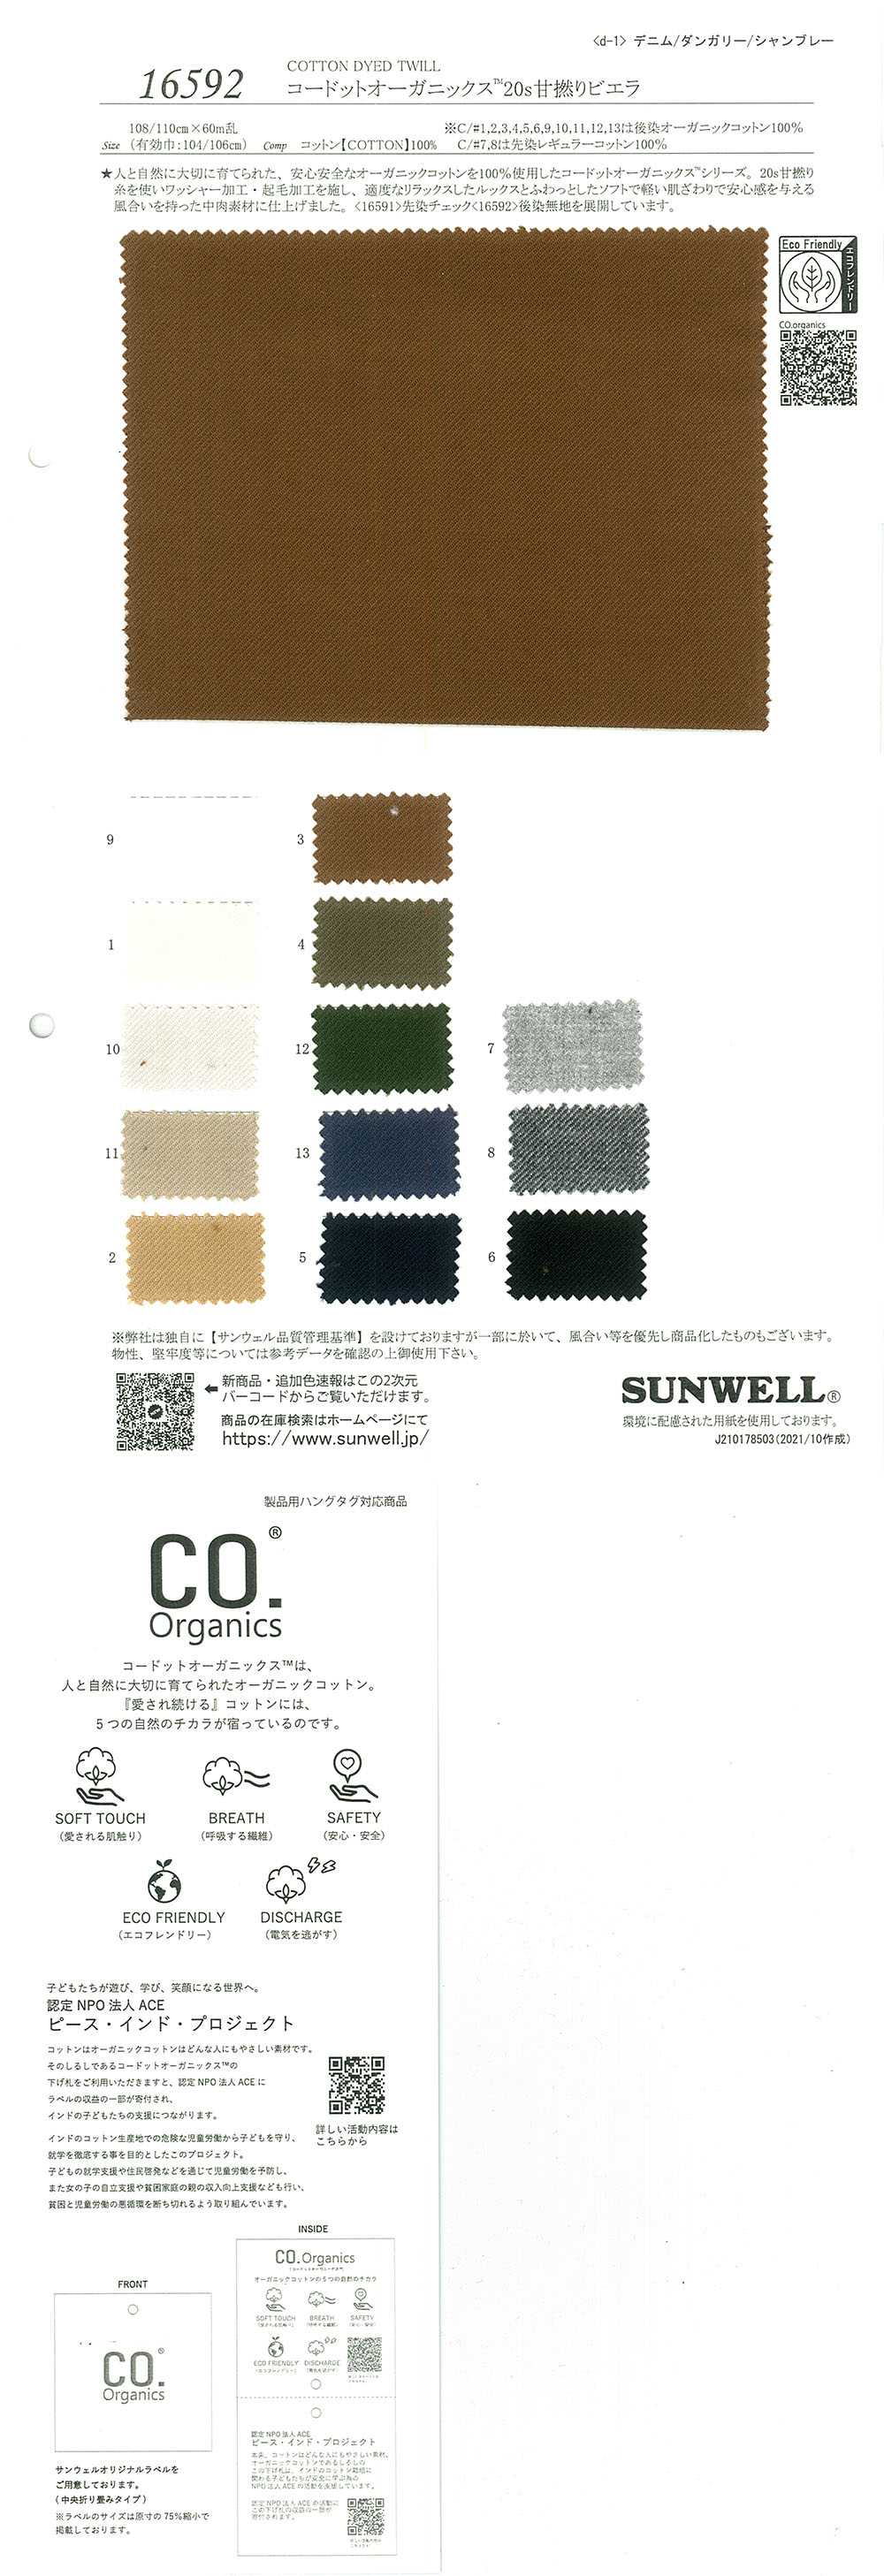 16592 Cordot Organics (R) 20 Viyella Torcida Dulce De Un Solo Hilo[Fabrica Textil] SUNWELL